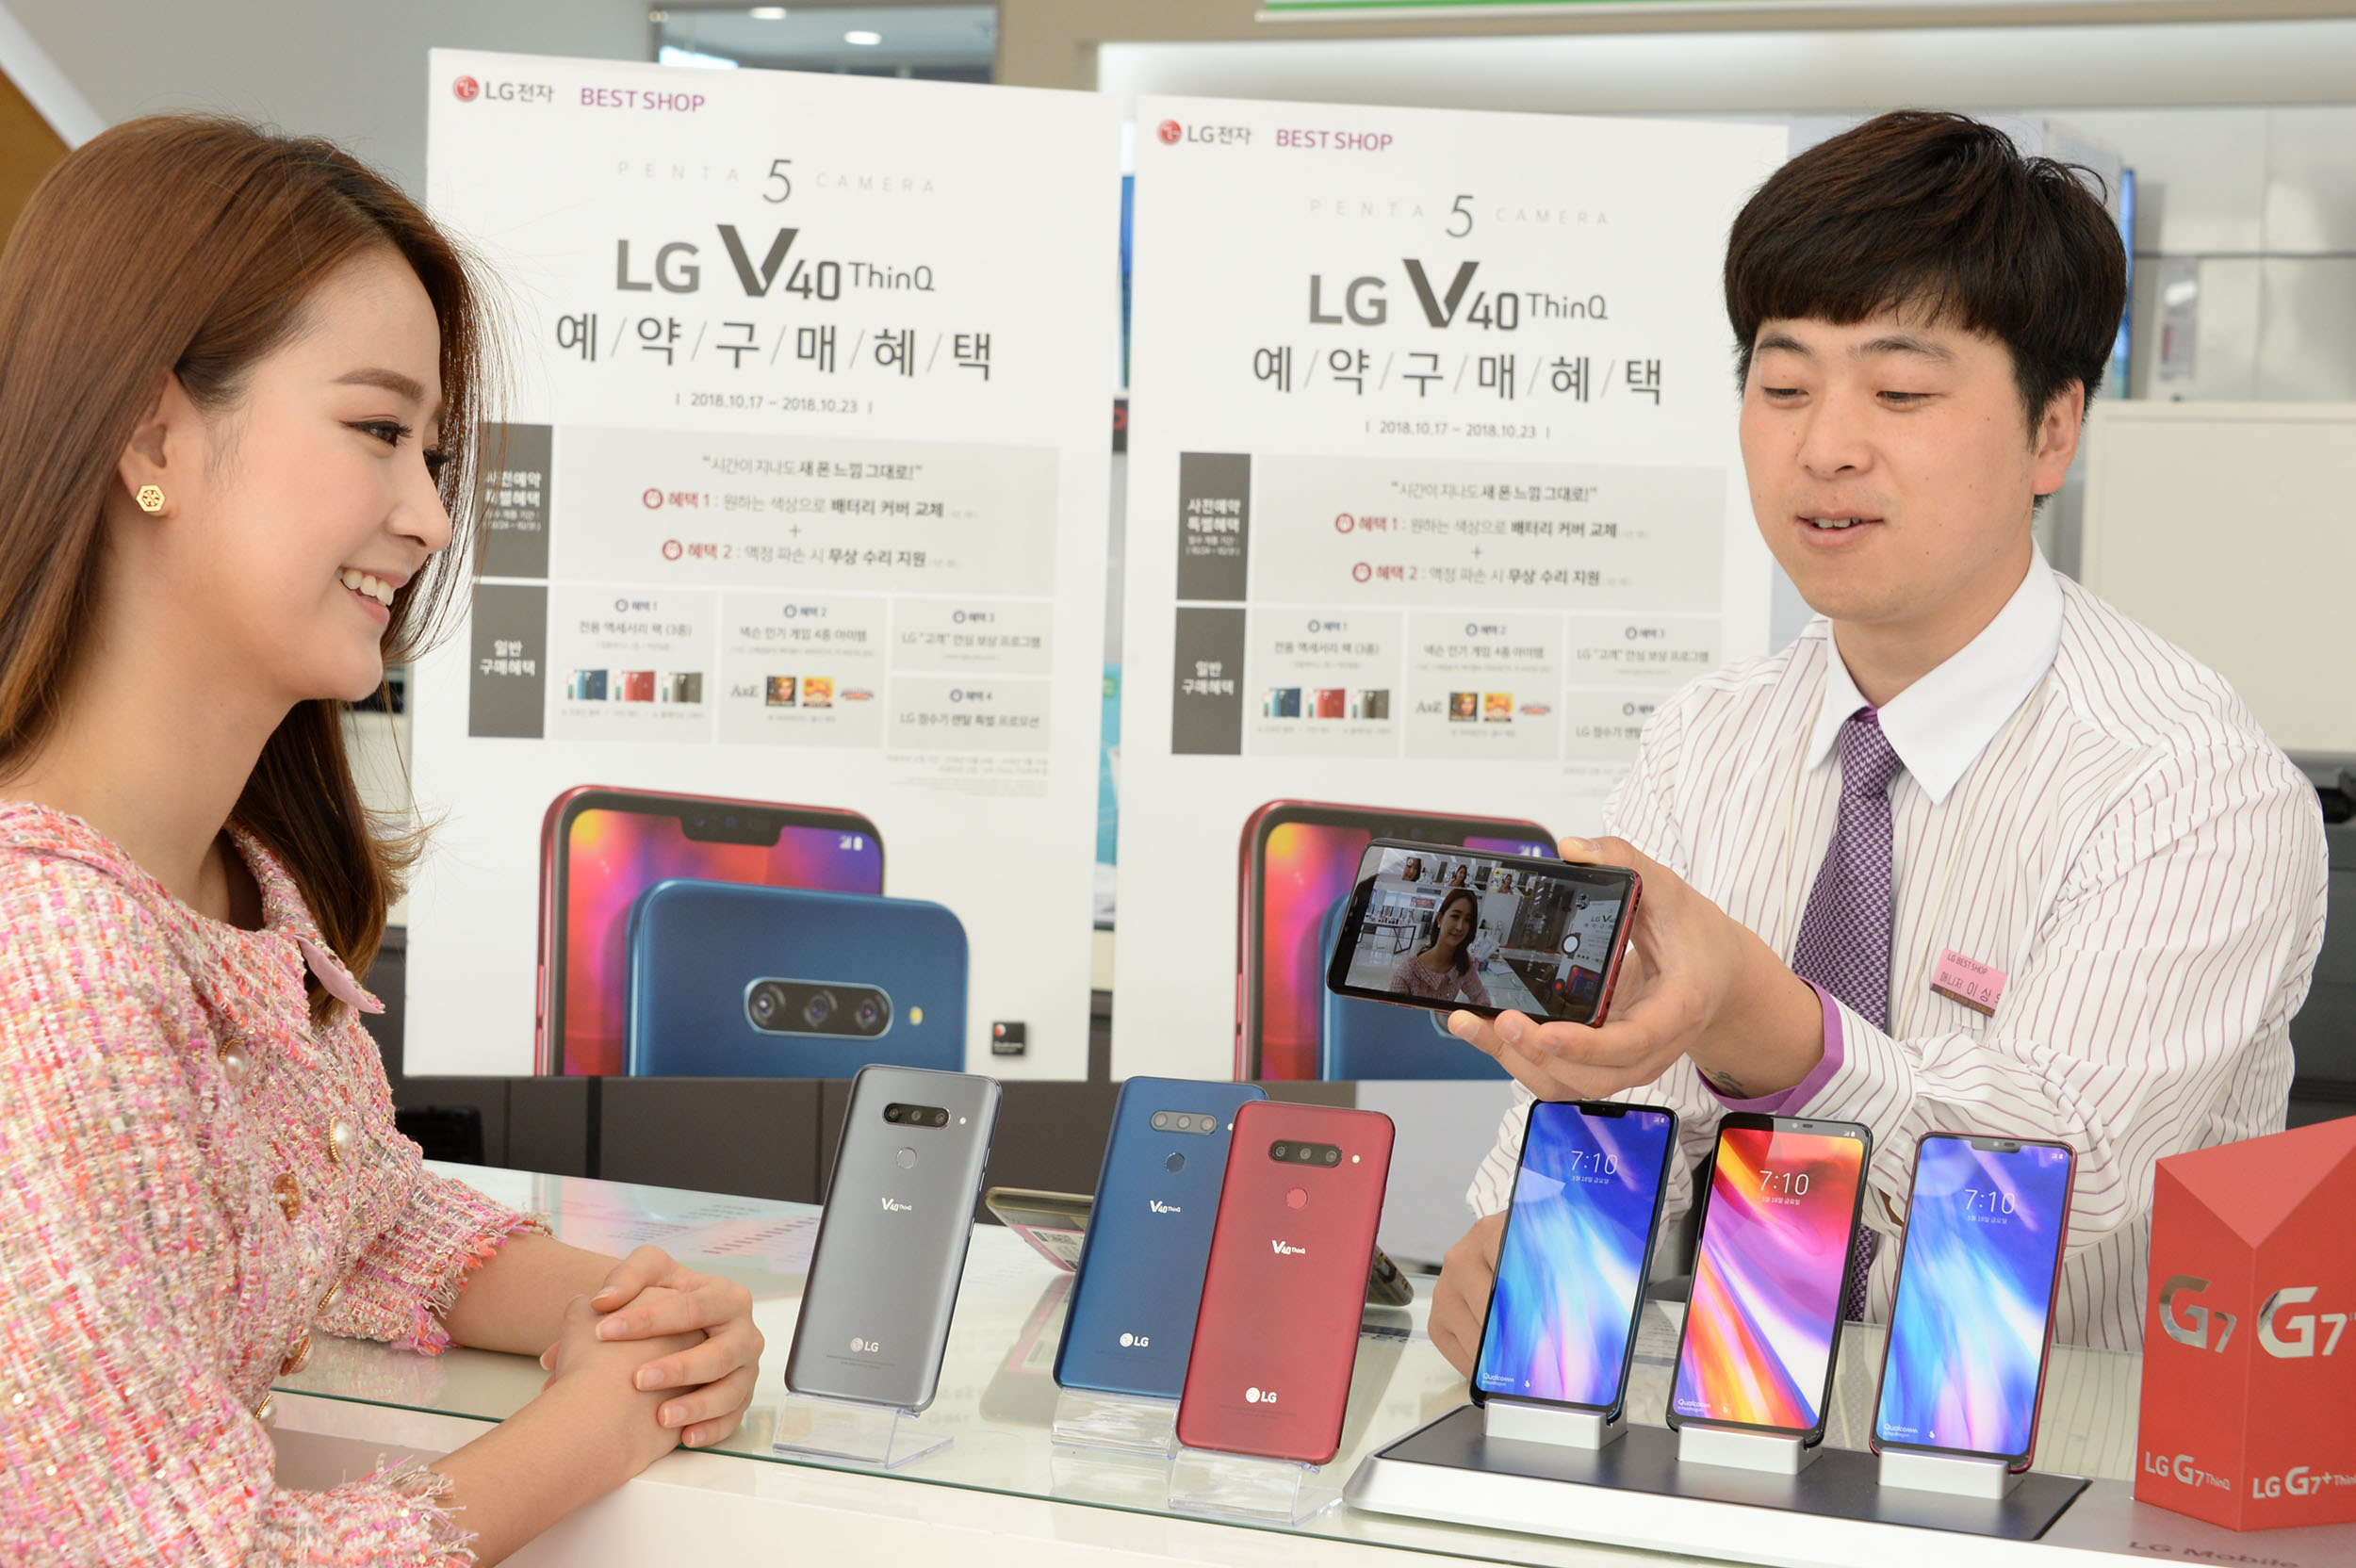 20일 서울 영등포구에 위치한 휴대폰 매장에서 판매사가 LG V40 ThinQ  의 트리플샷 기능을 설명  하고 있다. 